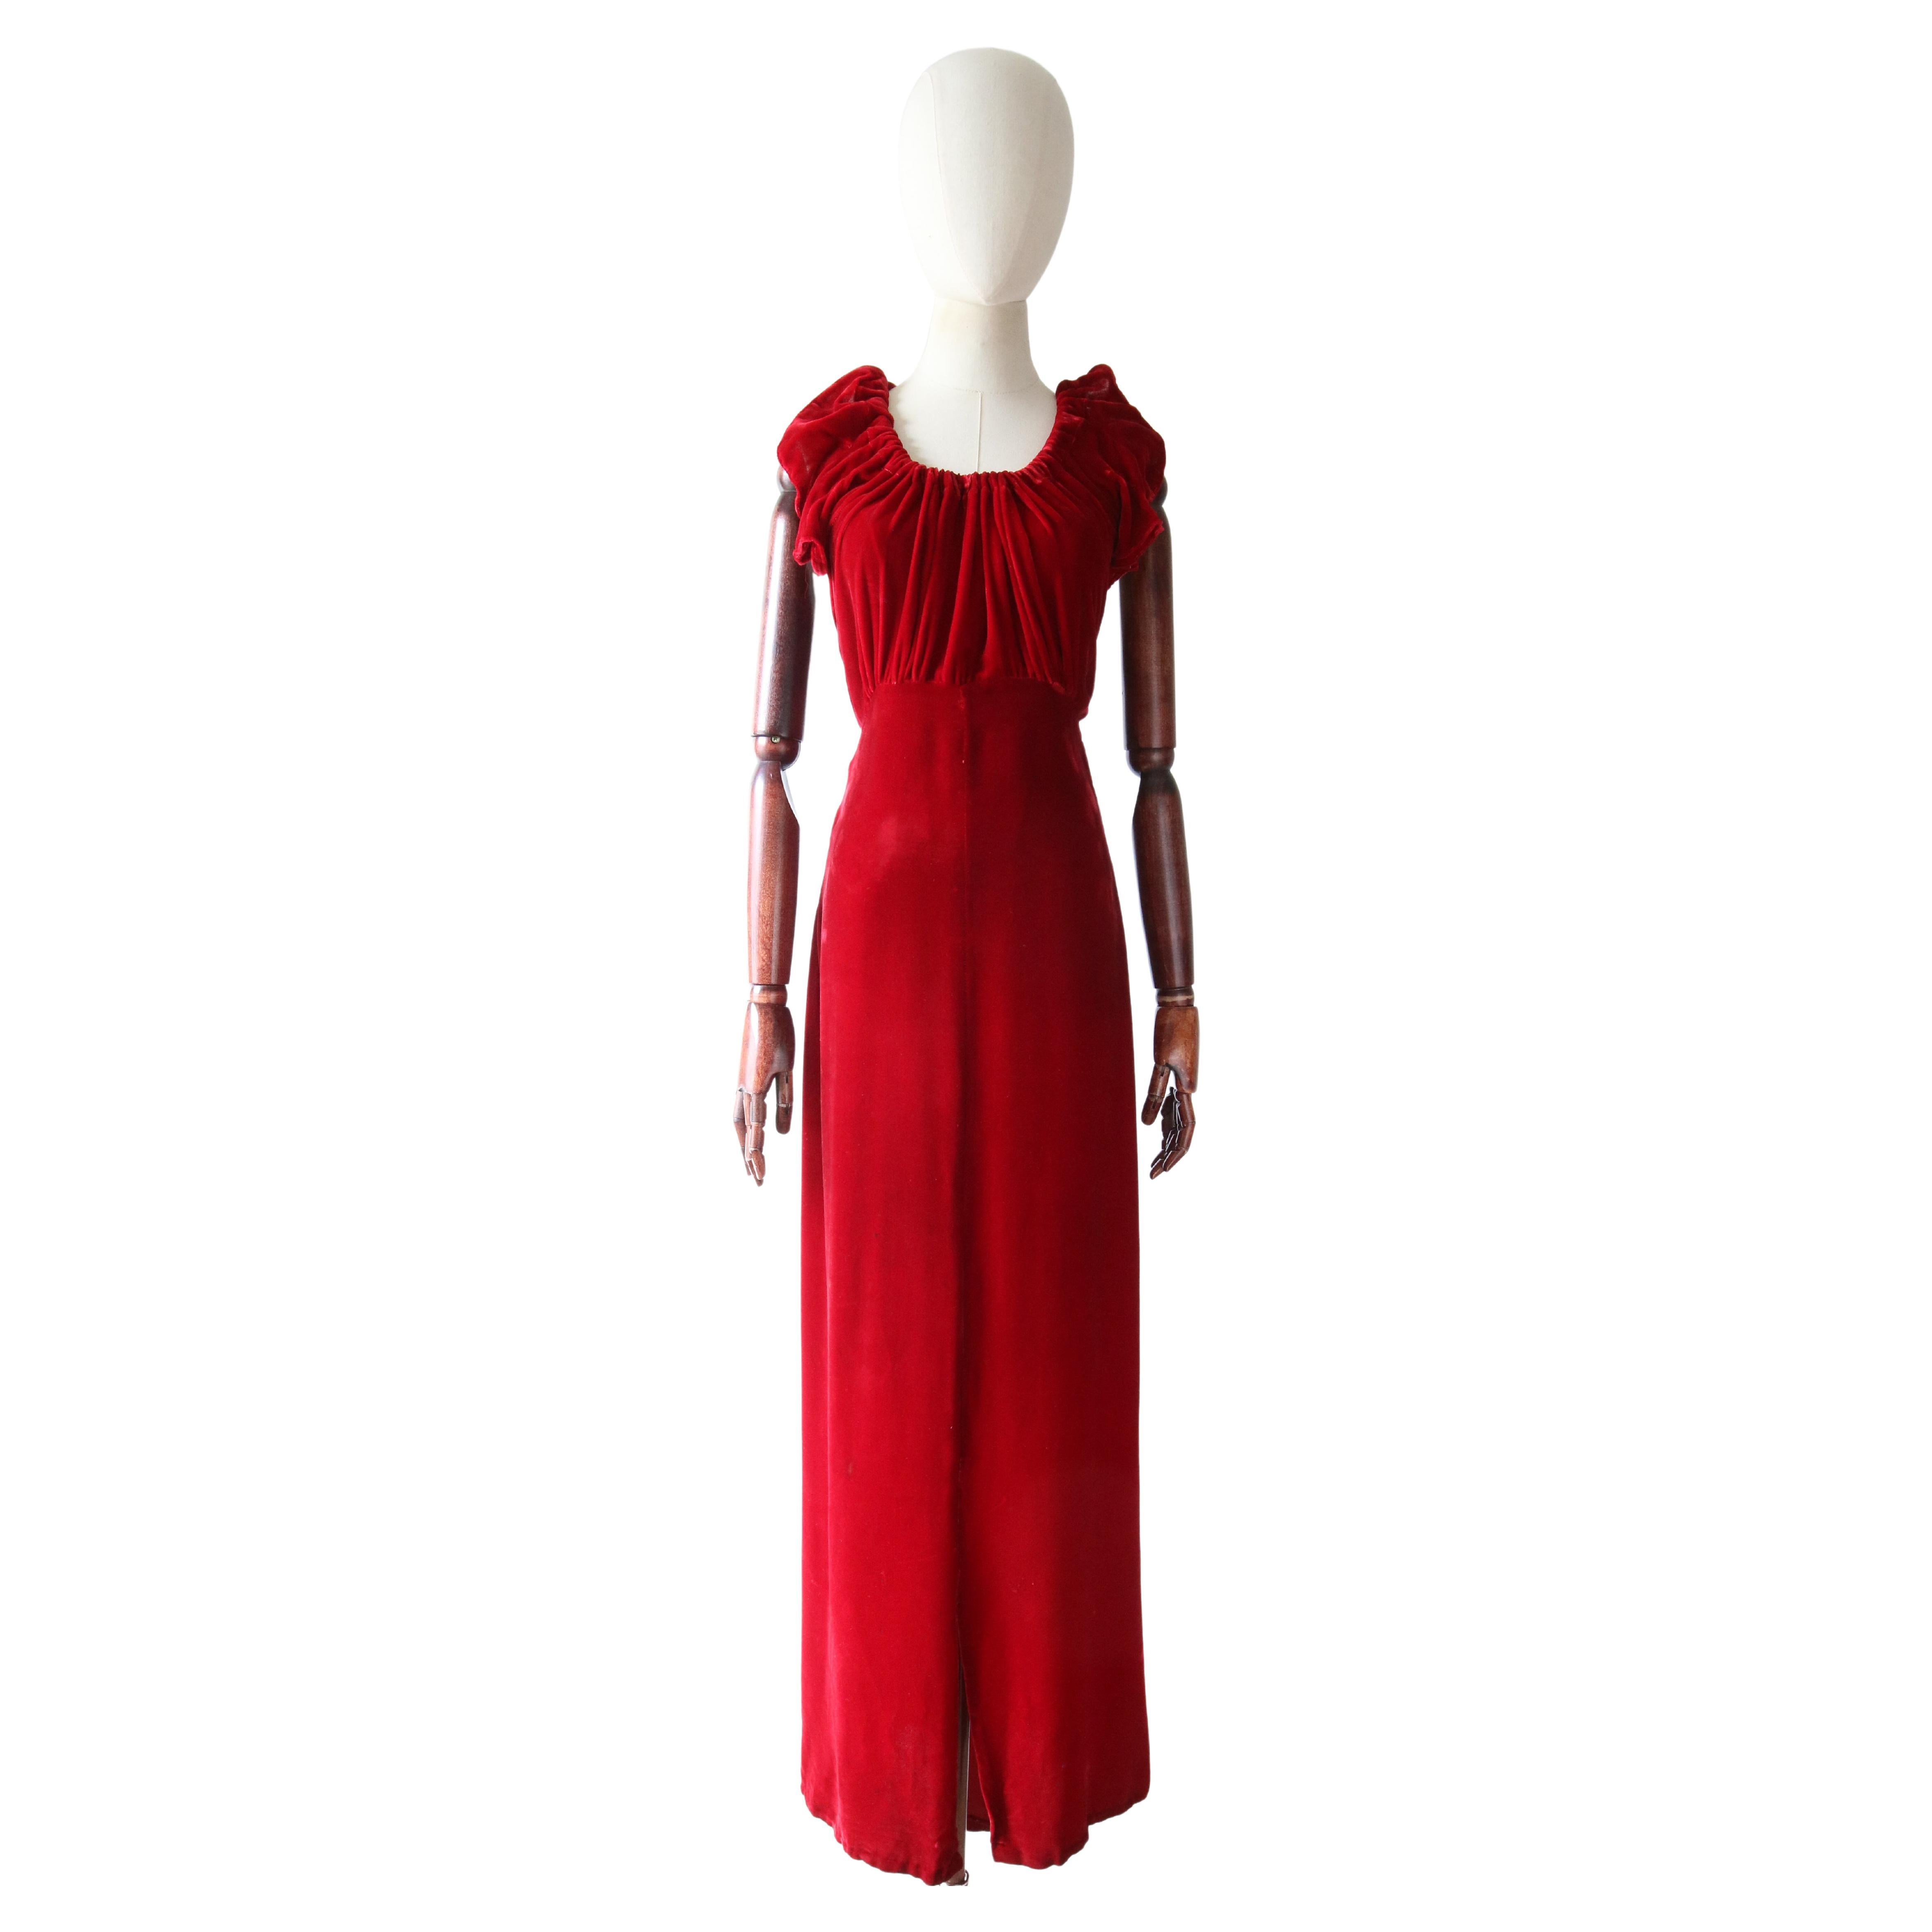 Vintage 1930's red velvet dress and jacket 1930's bias cut UK 6- 8 US 2-4 For Sale